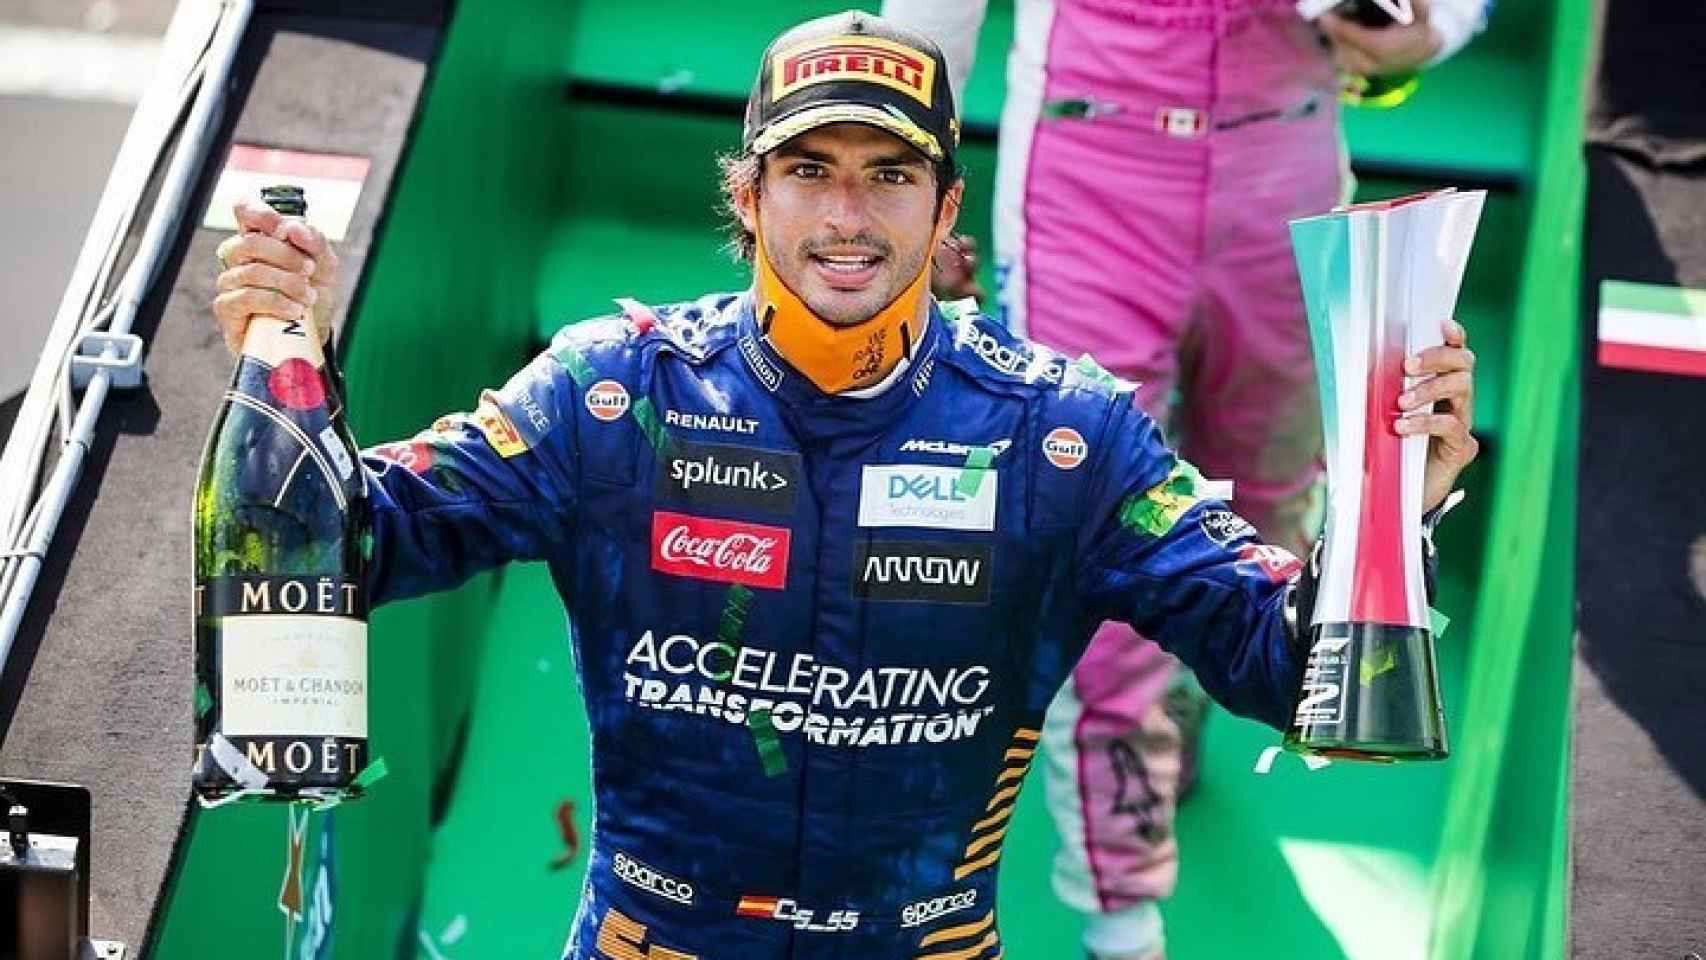 Carlos Sainz celebra su podio en Monza